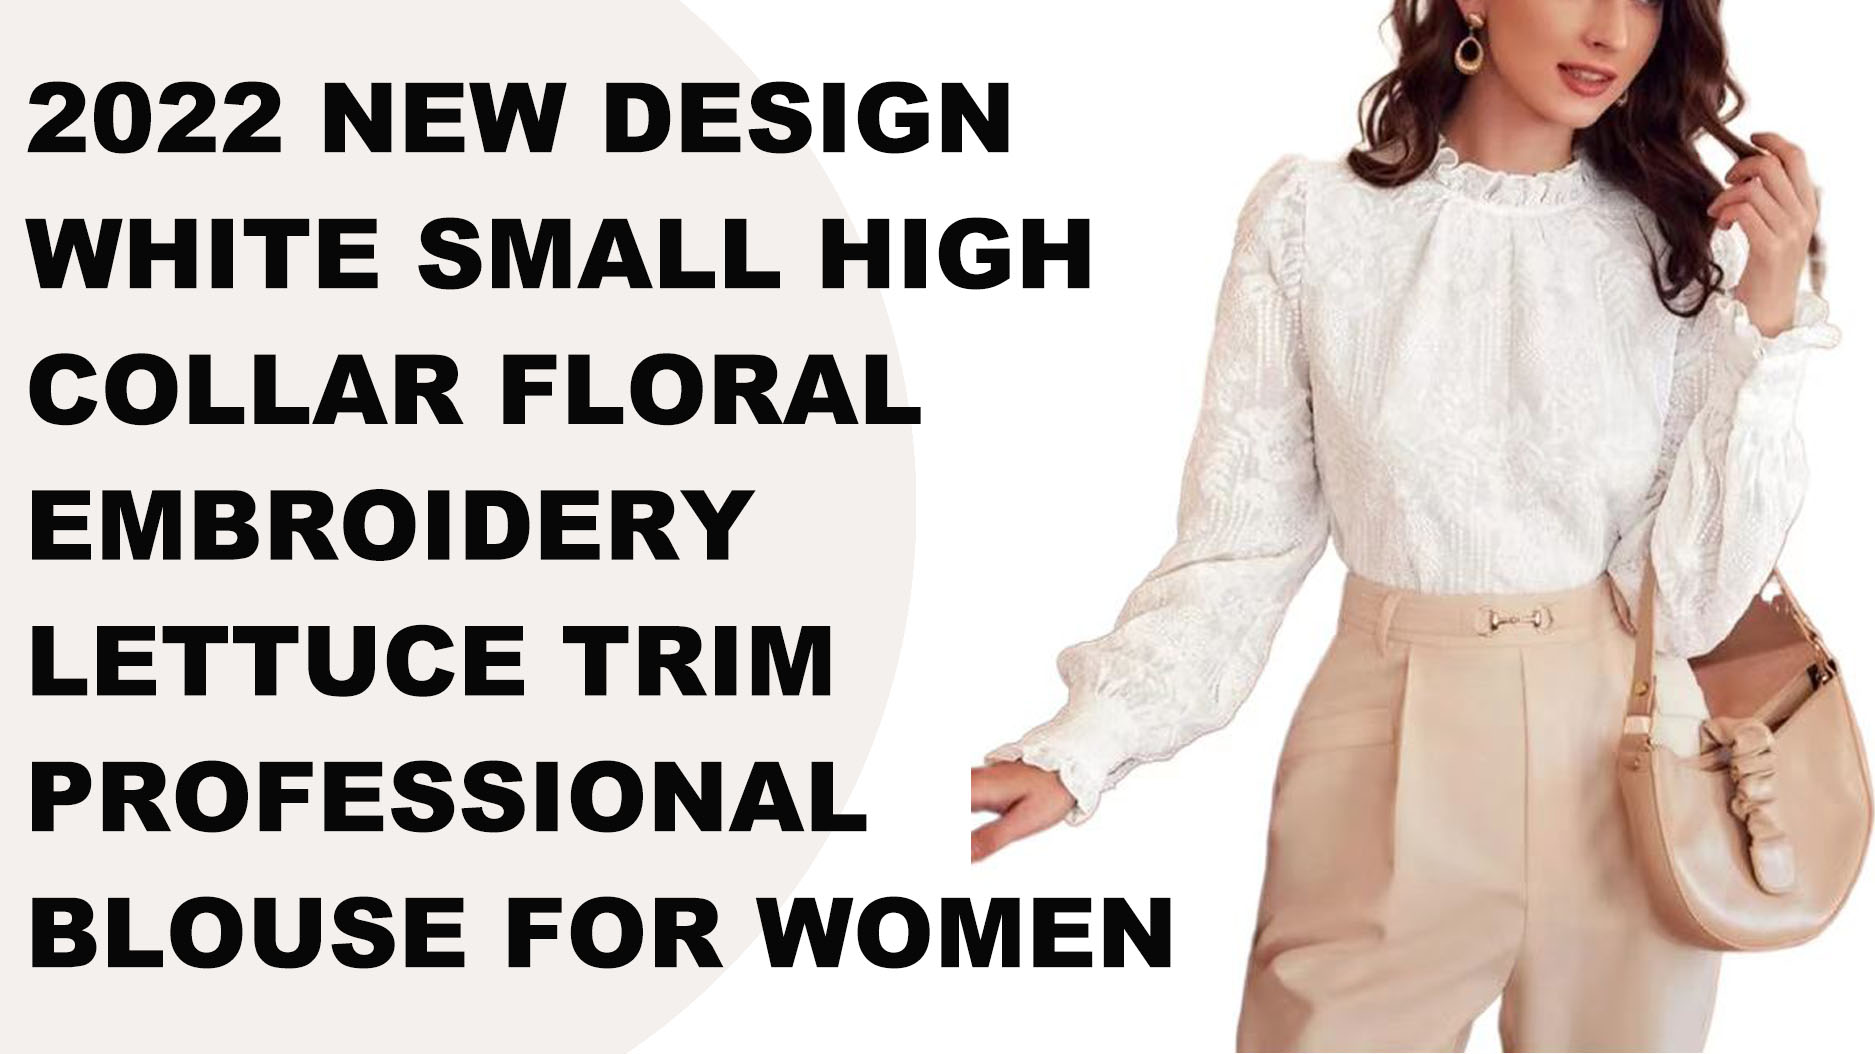 Chemisier professionnel blanc pour femmes, nouveau design, petit col haut, broderie florale, garniture de laitue, 2022